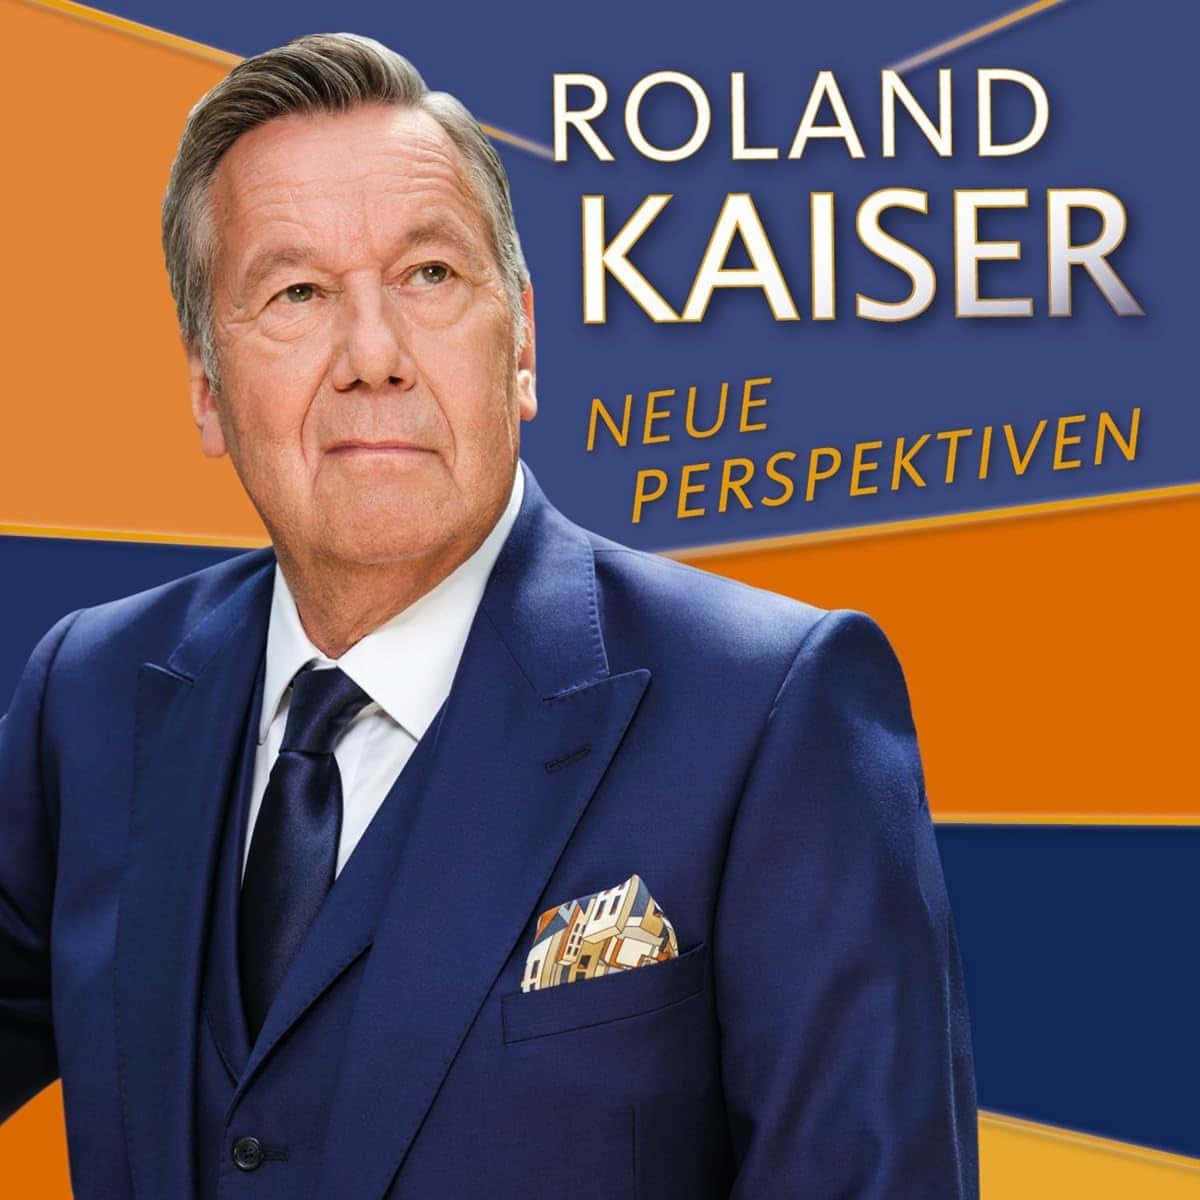 Roland Kaiser - CD “Neue Perspektiven” 2023 - hier im Bild das CD-Cover mit einem Foto des Schlager-Sängers Roland Kaiser